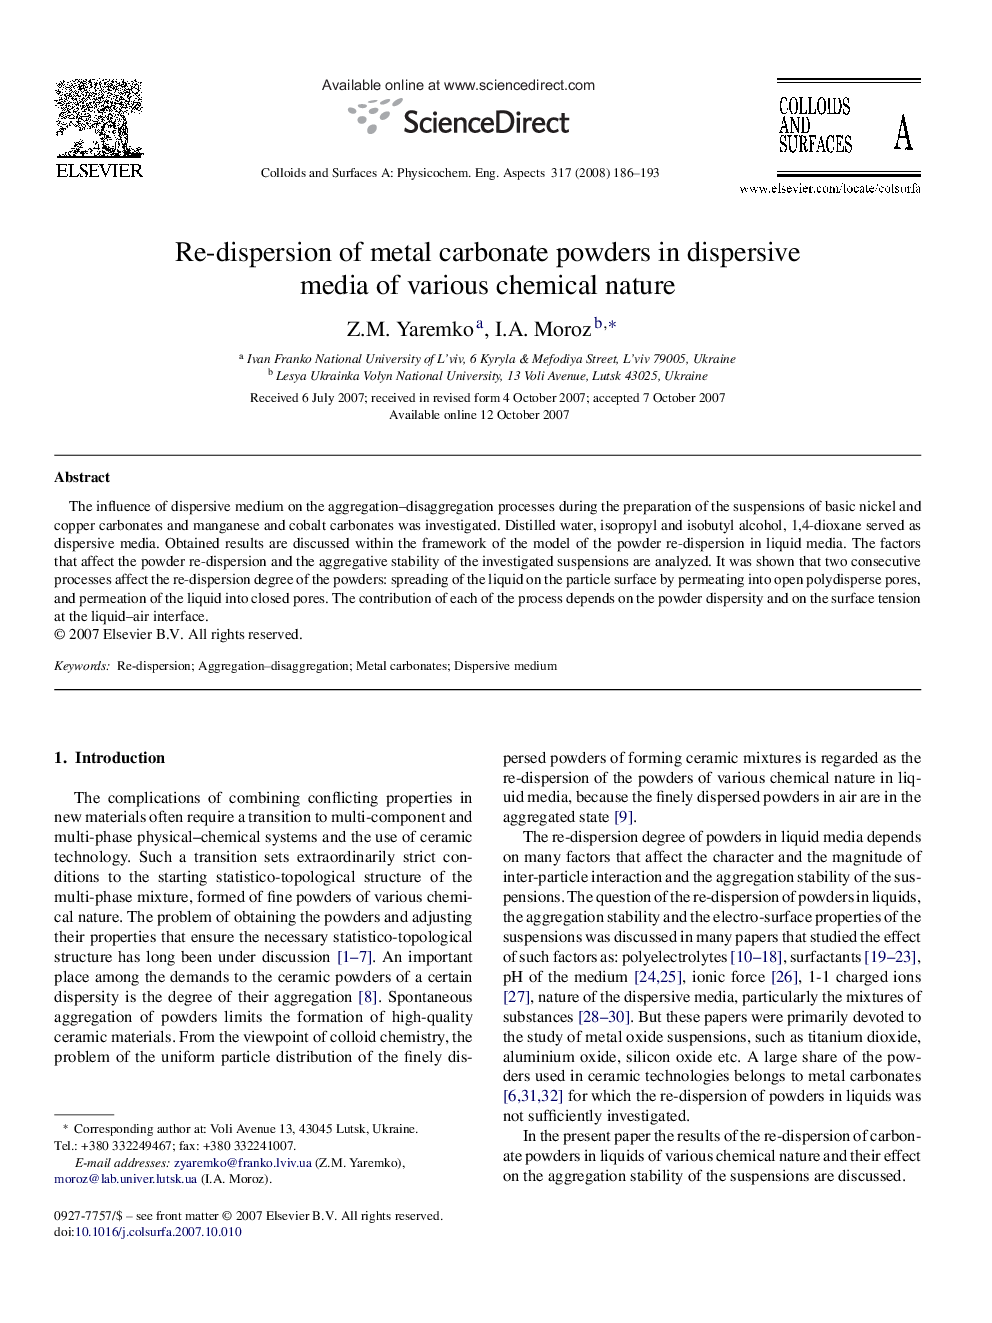 Re-dispersion of metal carbonate powders in dispersive media of various chemical nature